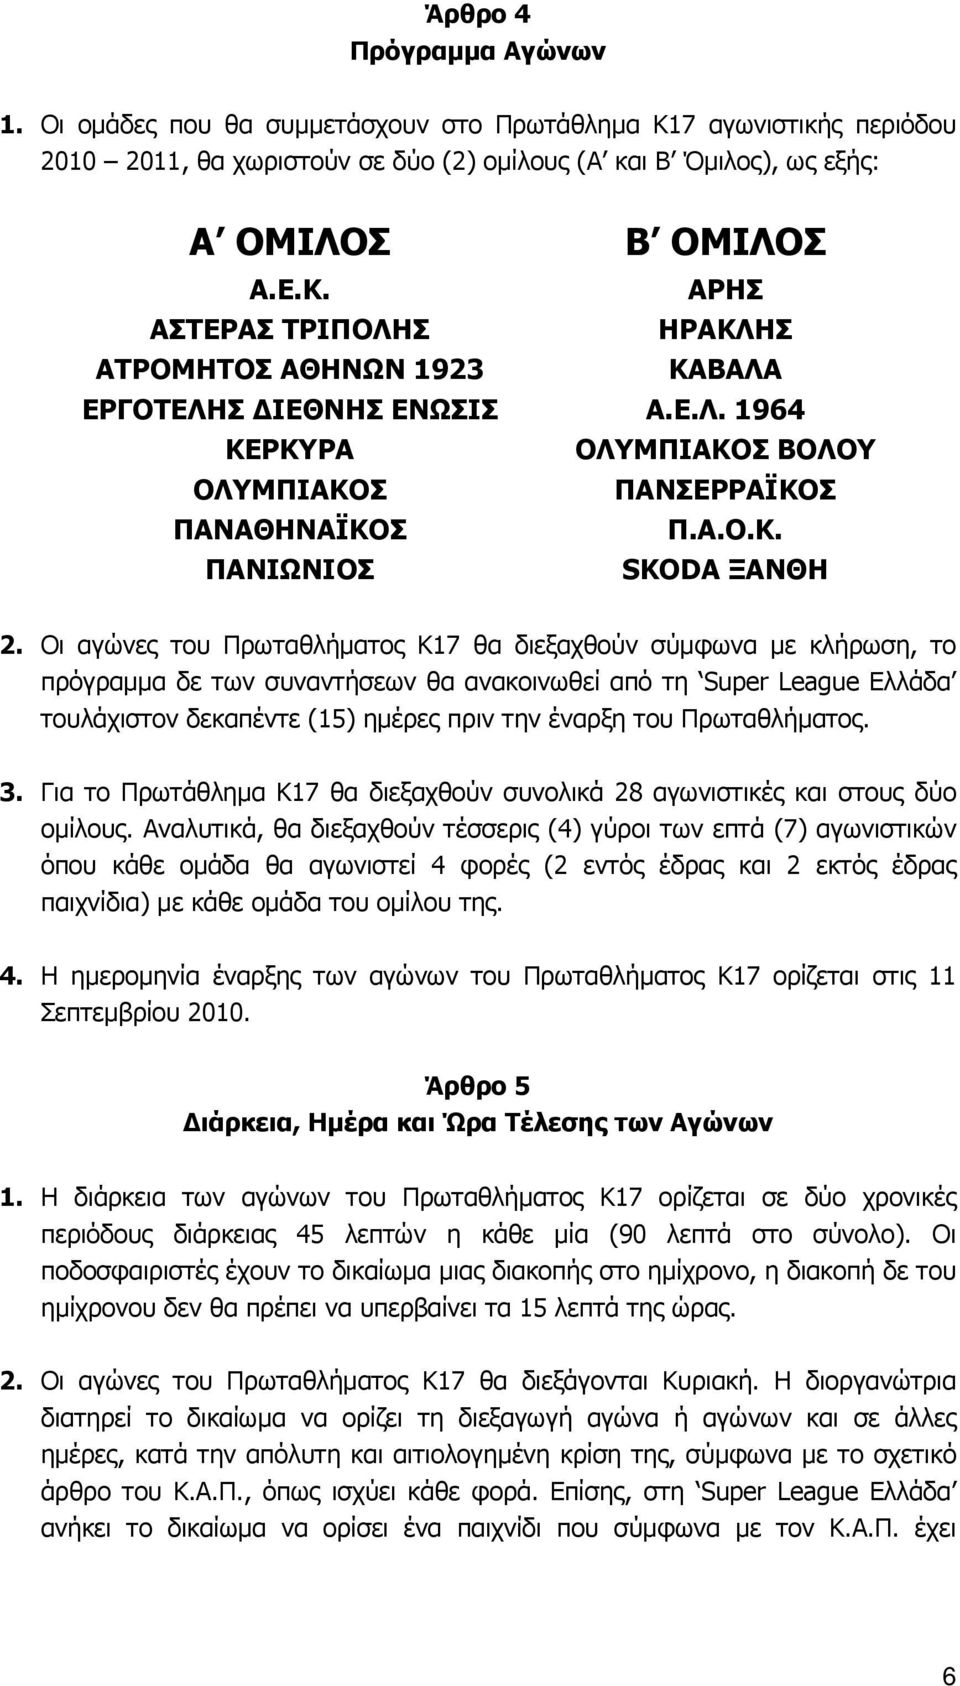 Οι αγώνες του Πρωταθλήματος Κ17 θα διεξαχθούν σύμφωνα με κλήρωση, το πρόγραμμα δε των συναντήσεων θα ανακοινωθεί από τη Super League Ελλάδα τουλάχιστον δεκαπέντε (15) ημέρες πριν την έναρξη του